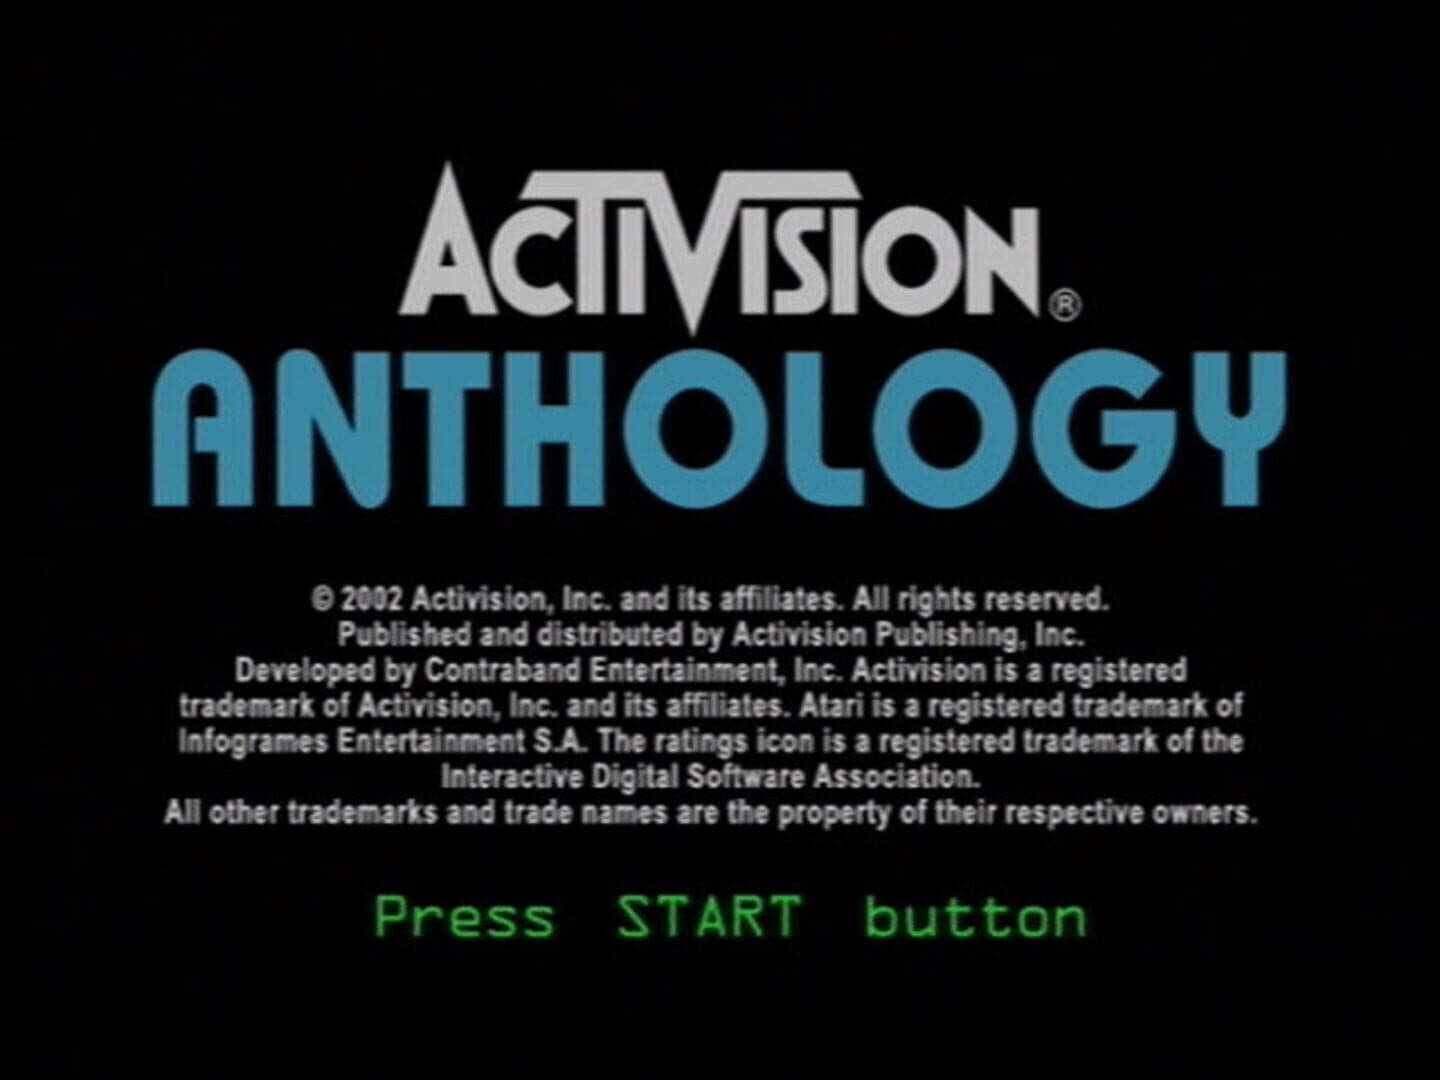 Activision Anthology Image